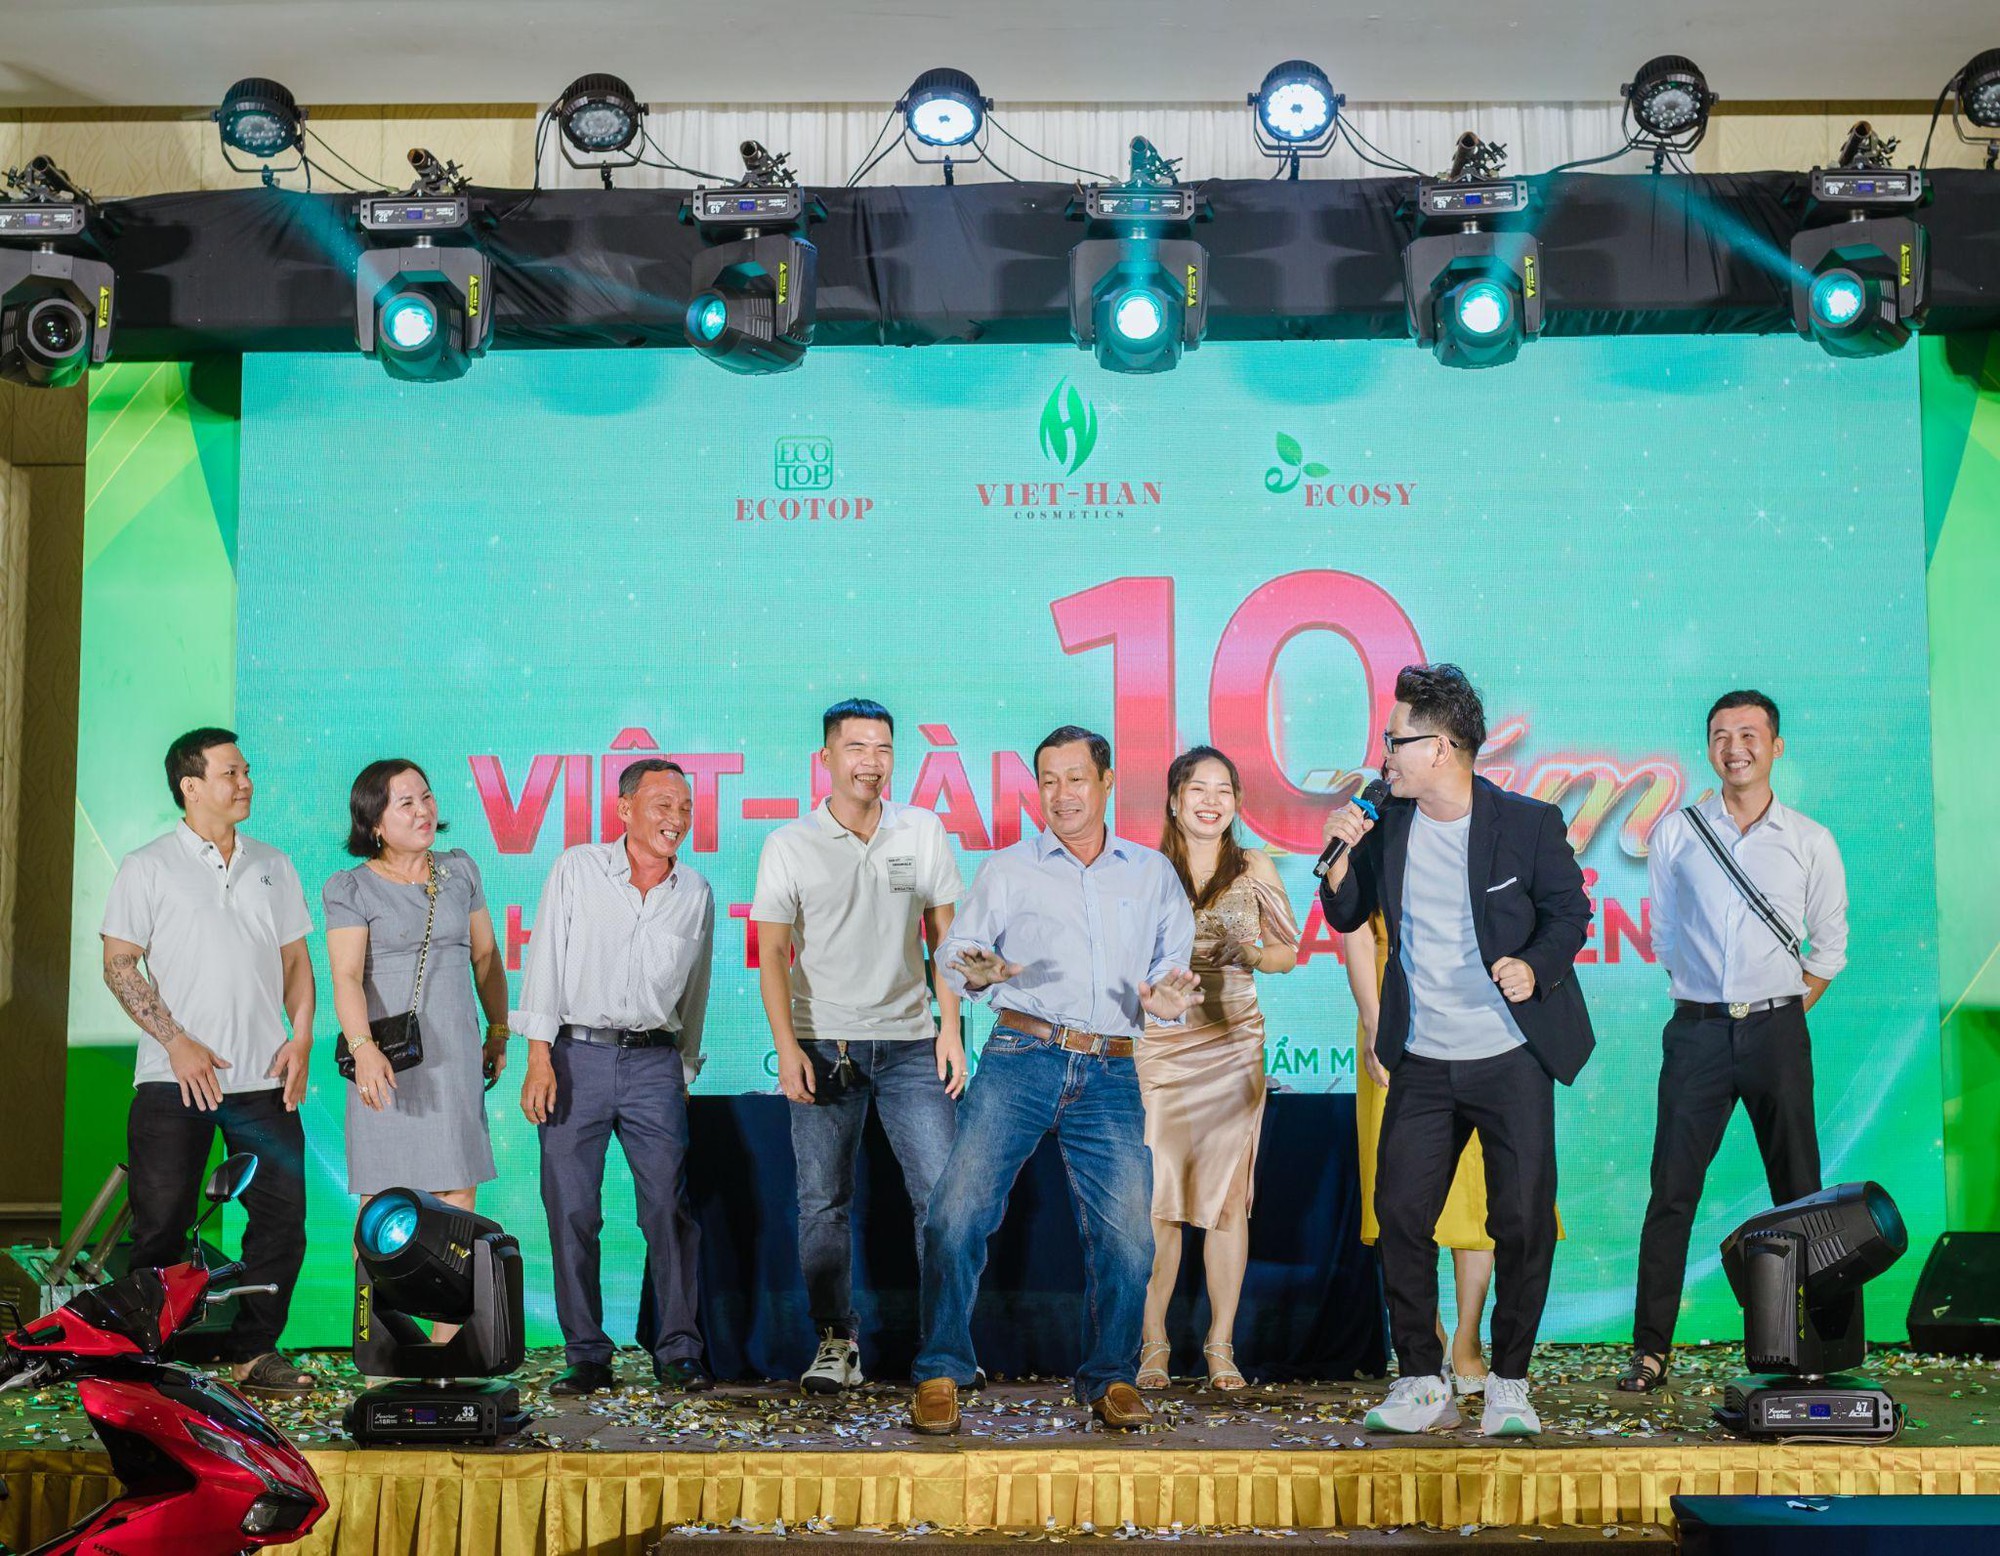 Thương hiệu Ecosy - Ecotop ra mắt dòng sản phẩm mới kỉ niệm 10 năm thành lập Việt - Hàn Cosmetic - Ảnh 3.